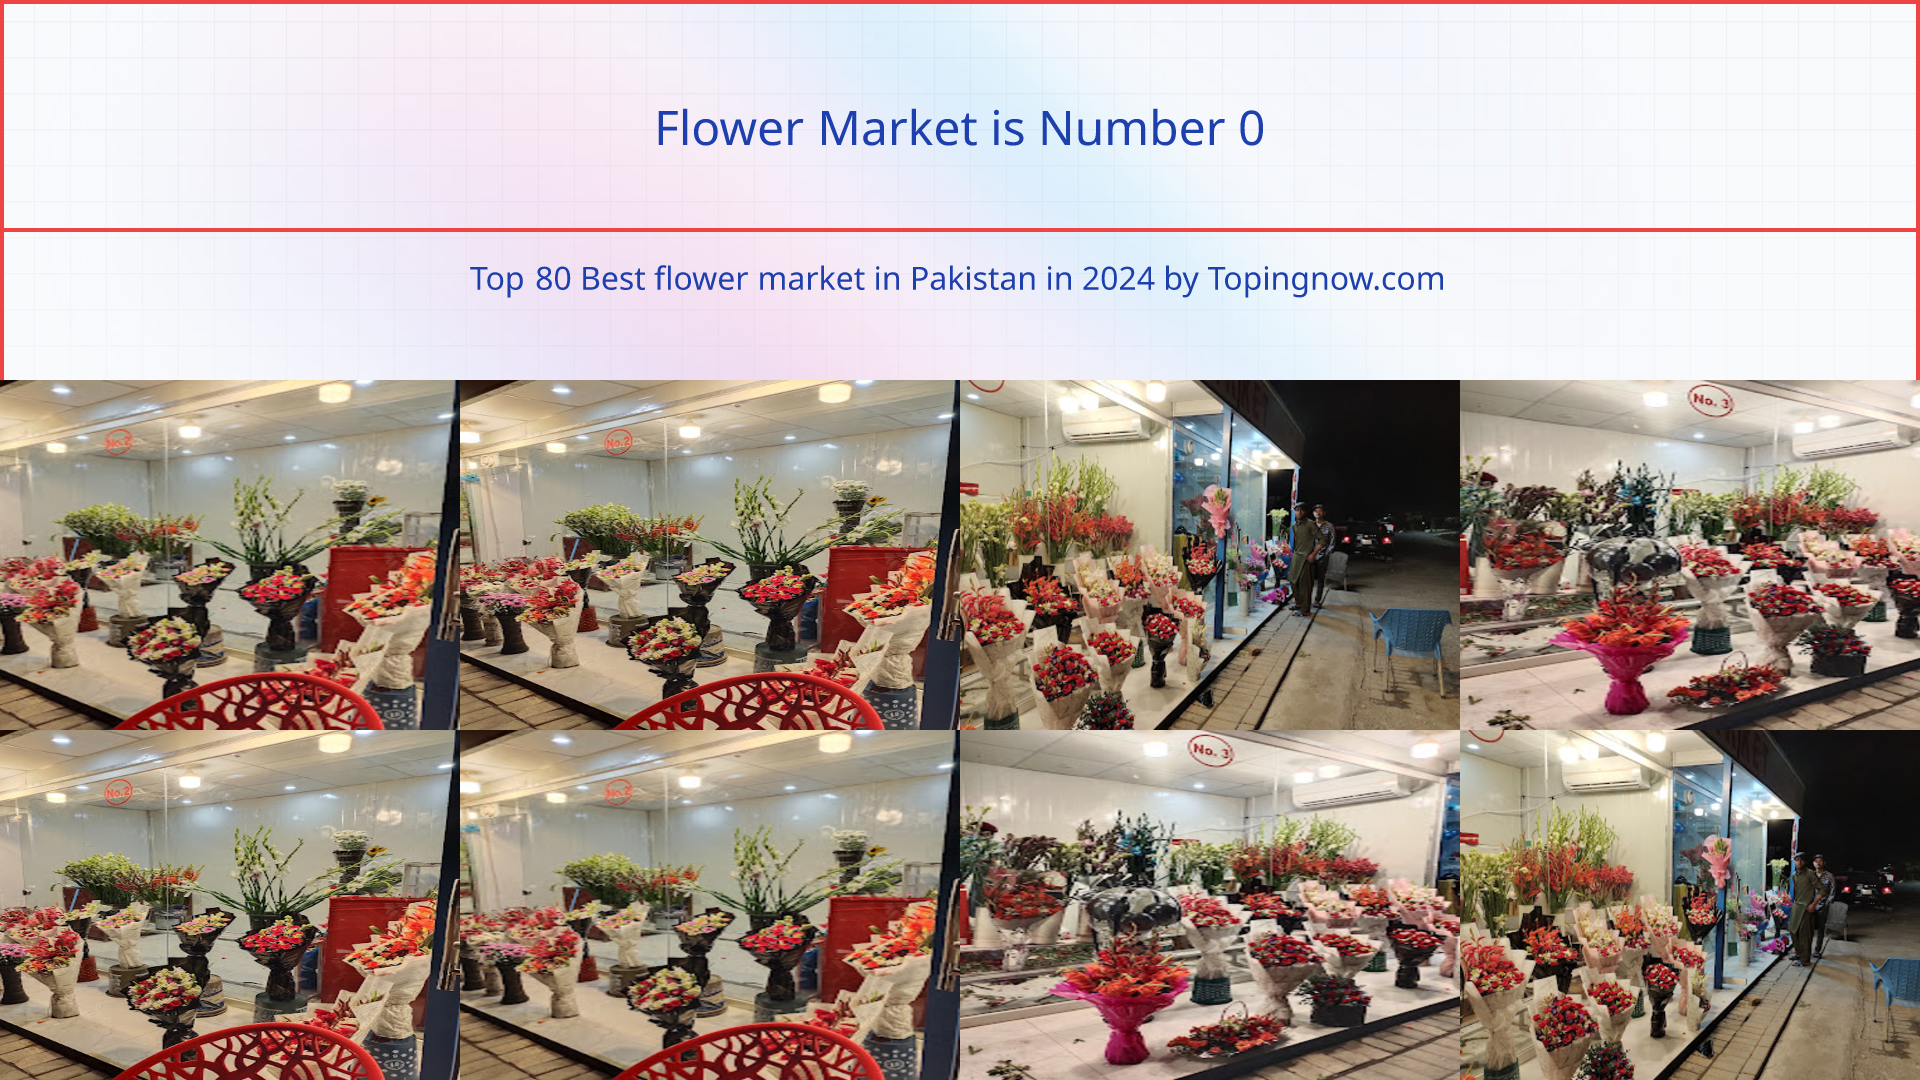 Flower Market: Top 80 Best flower market in Pakistan in 2024